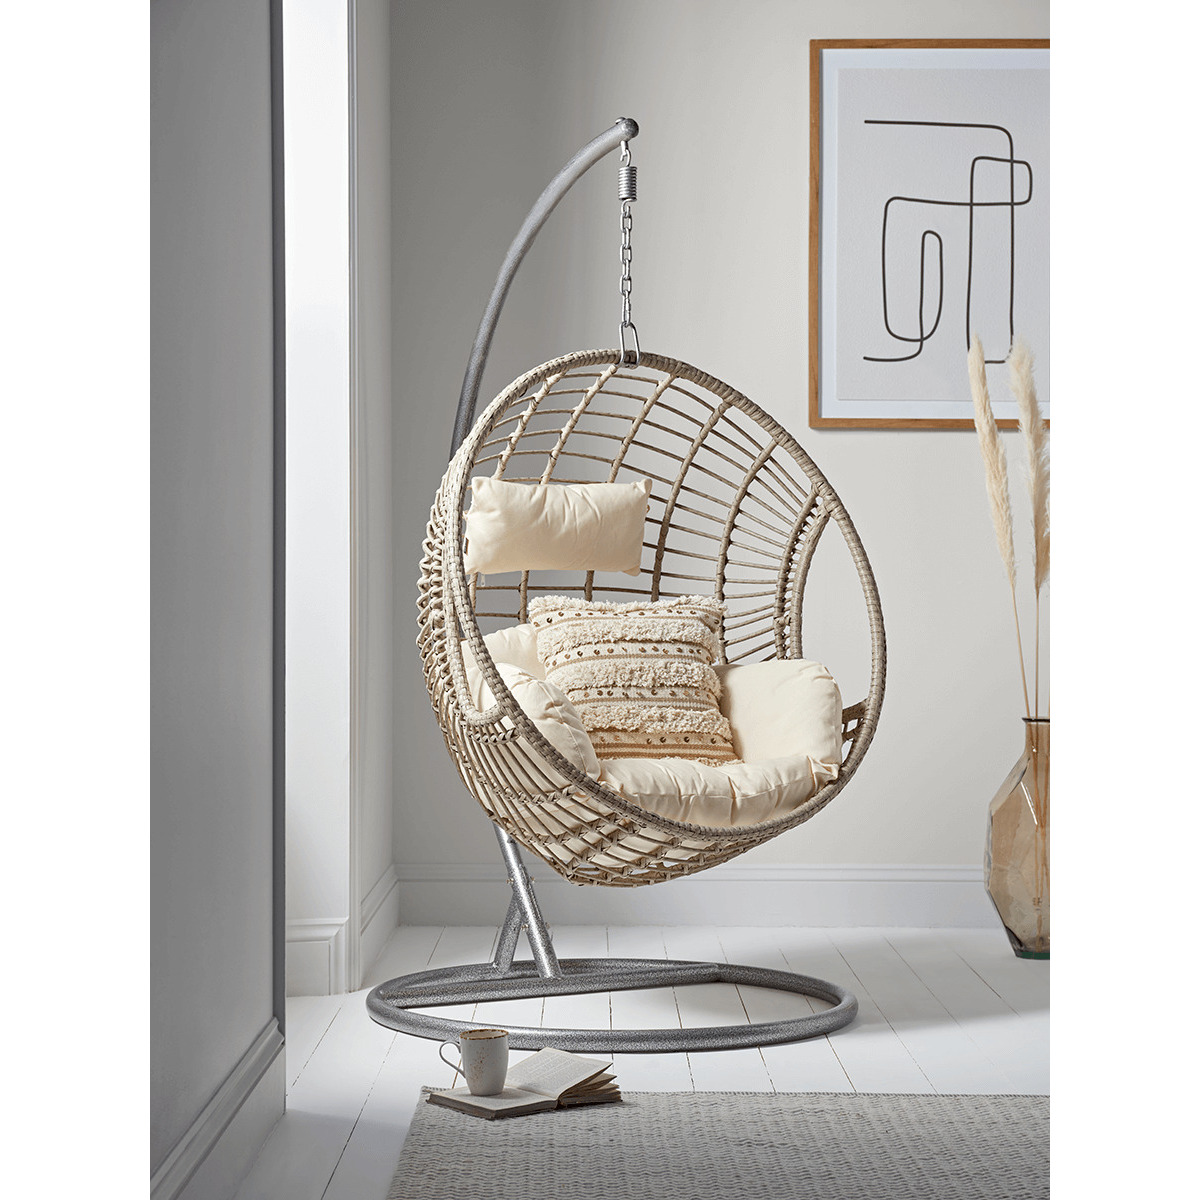 Indoor Outdoor Hanging Chair - Grey - image 1